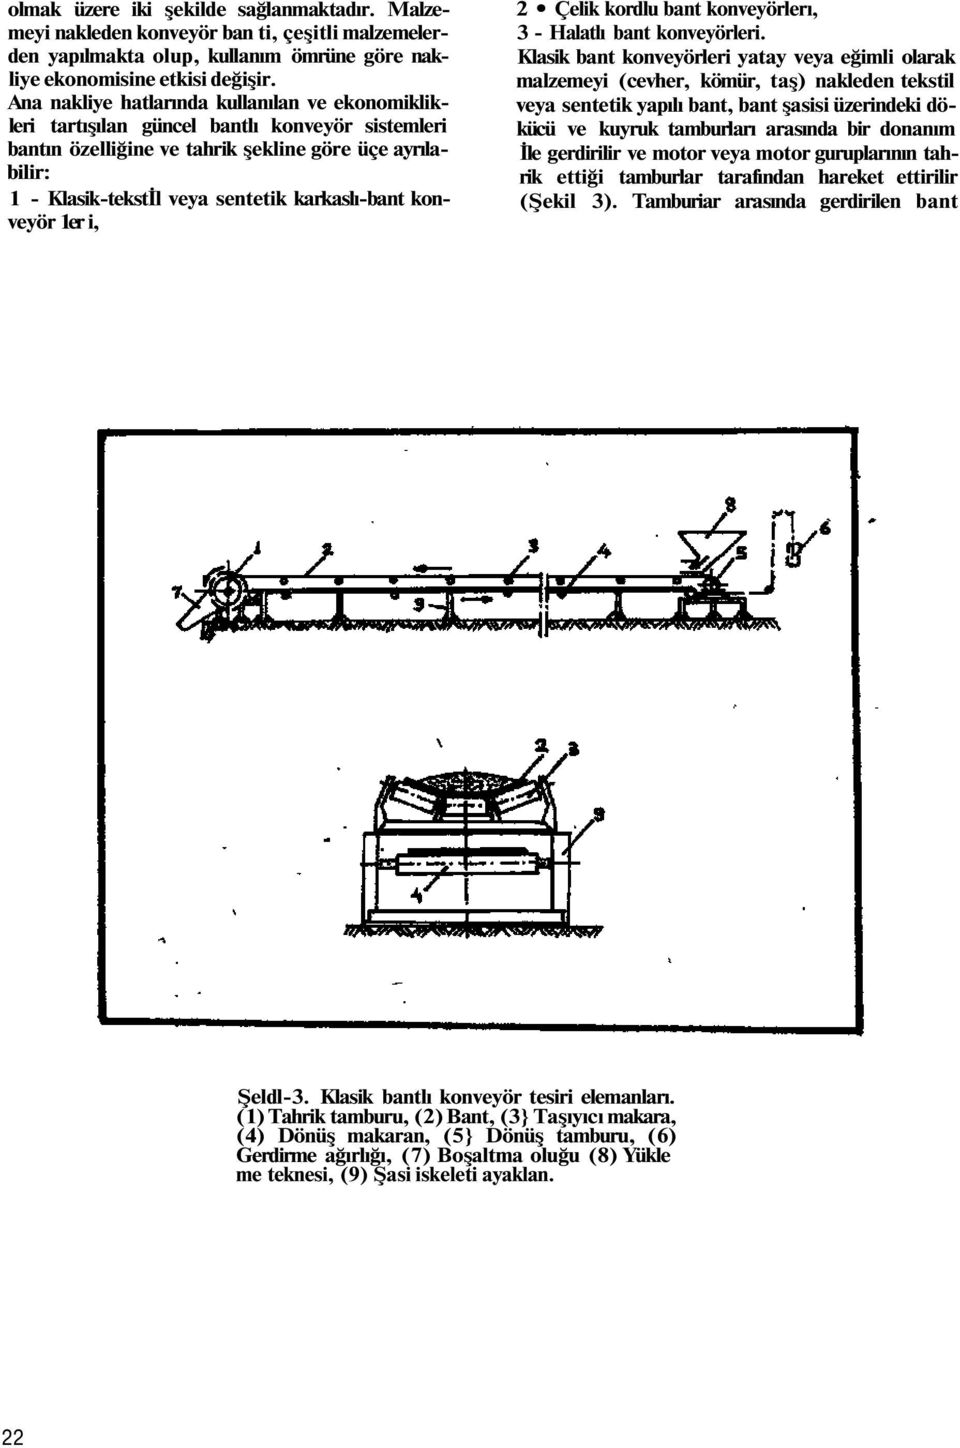 karkaslı-bant konveyör 1er i, 2 Çelik kordlu bant konveyörlerı, 3 - Halatlı bant konveyörleri.